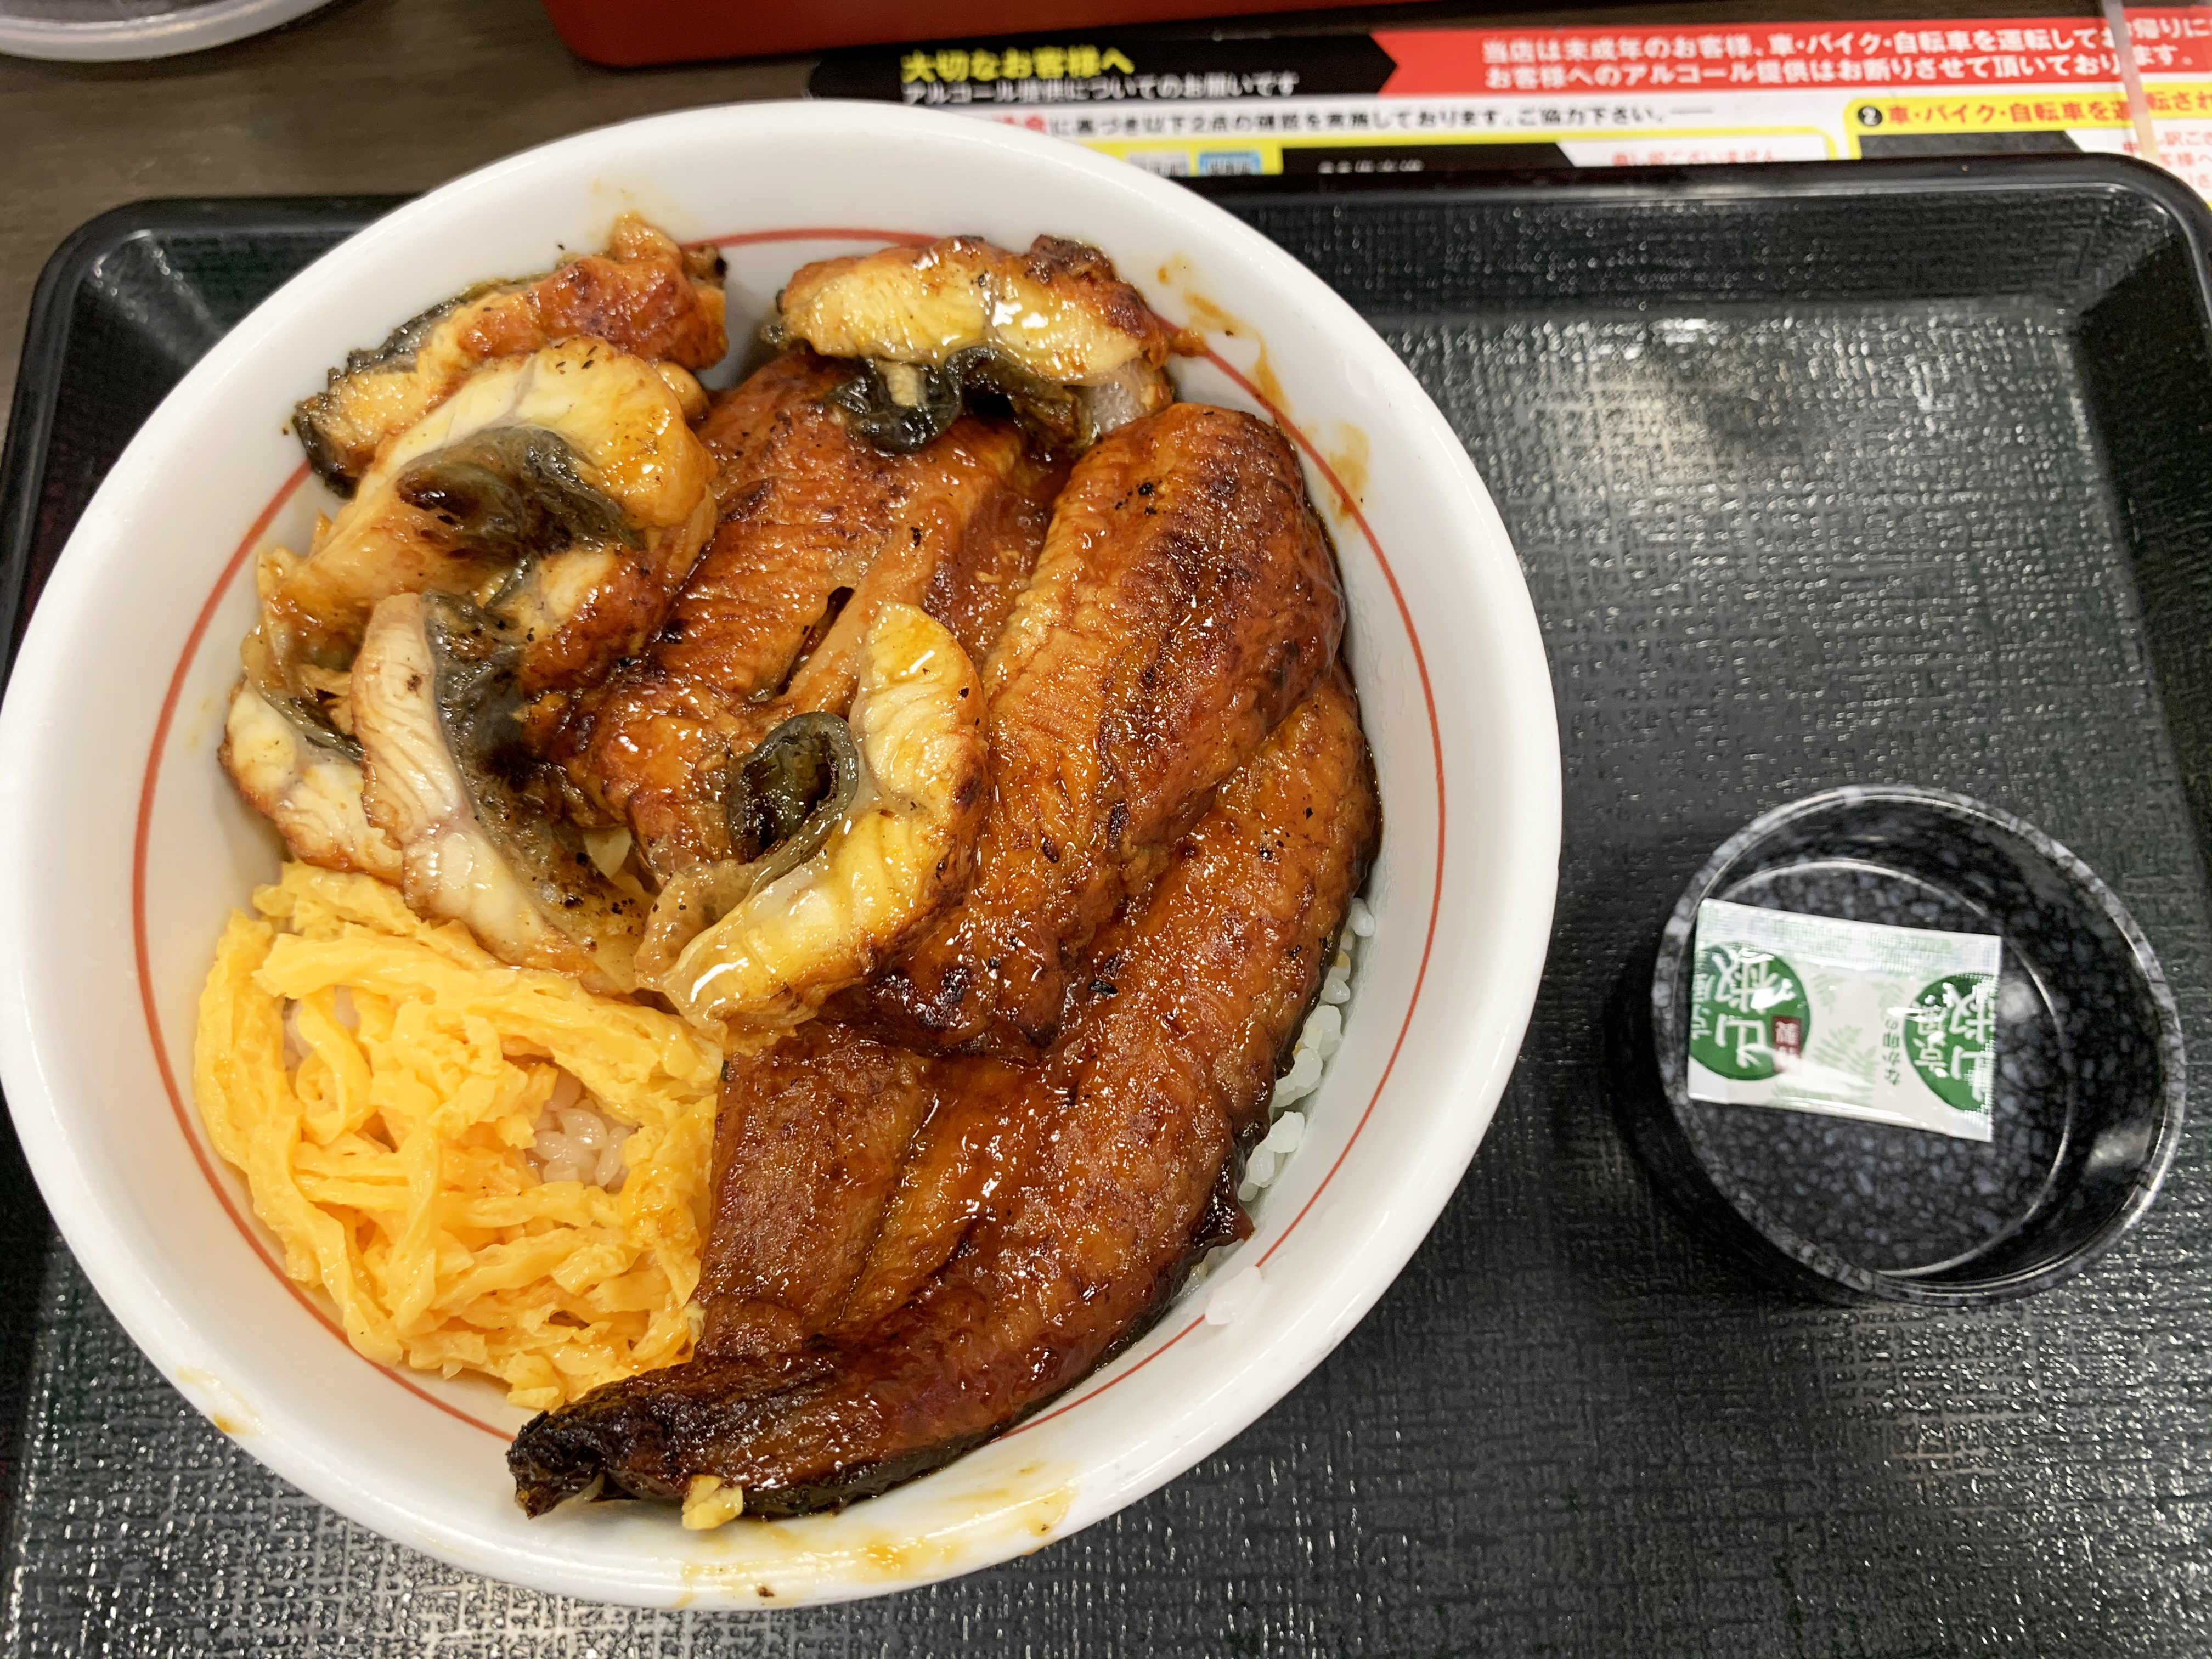 なか卯の うな丼豪快盛 を食べてみたら本当に豪快だった 1650円でもコスパの良さを感じるふっくらウナギがマジ最高